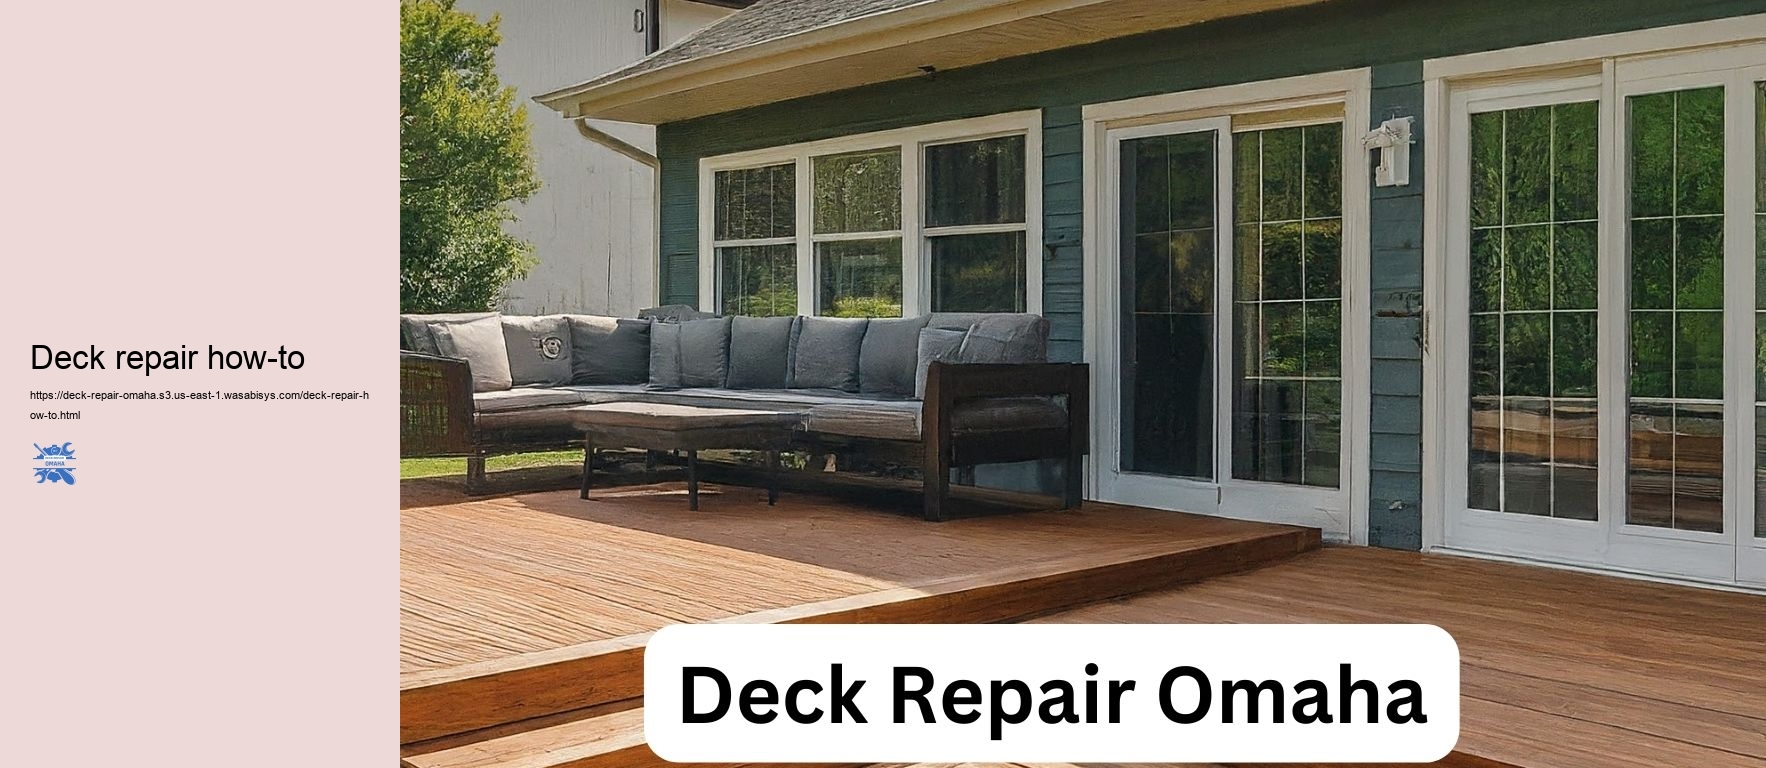 Deck repair how-to